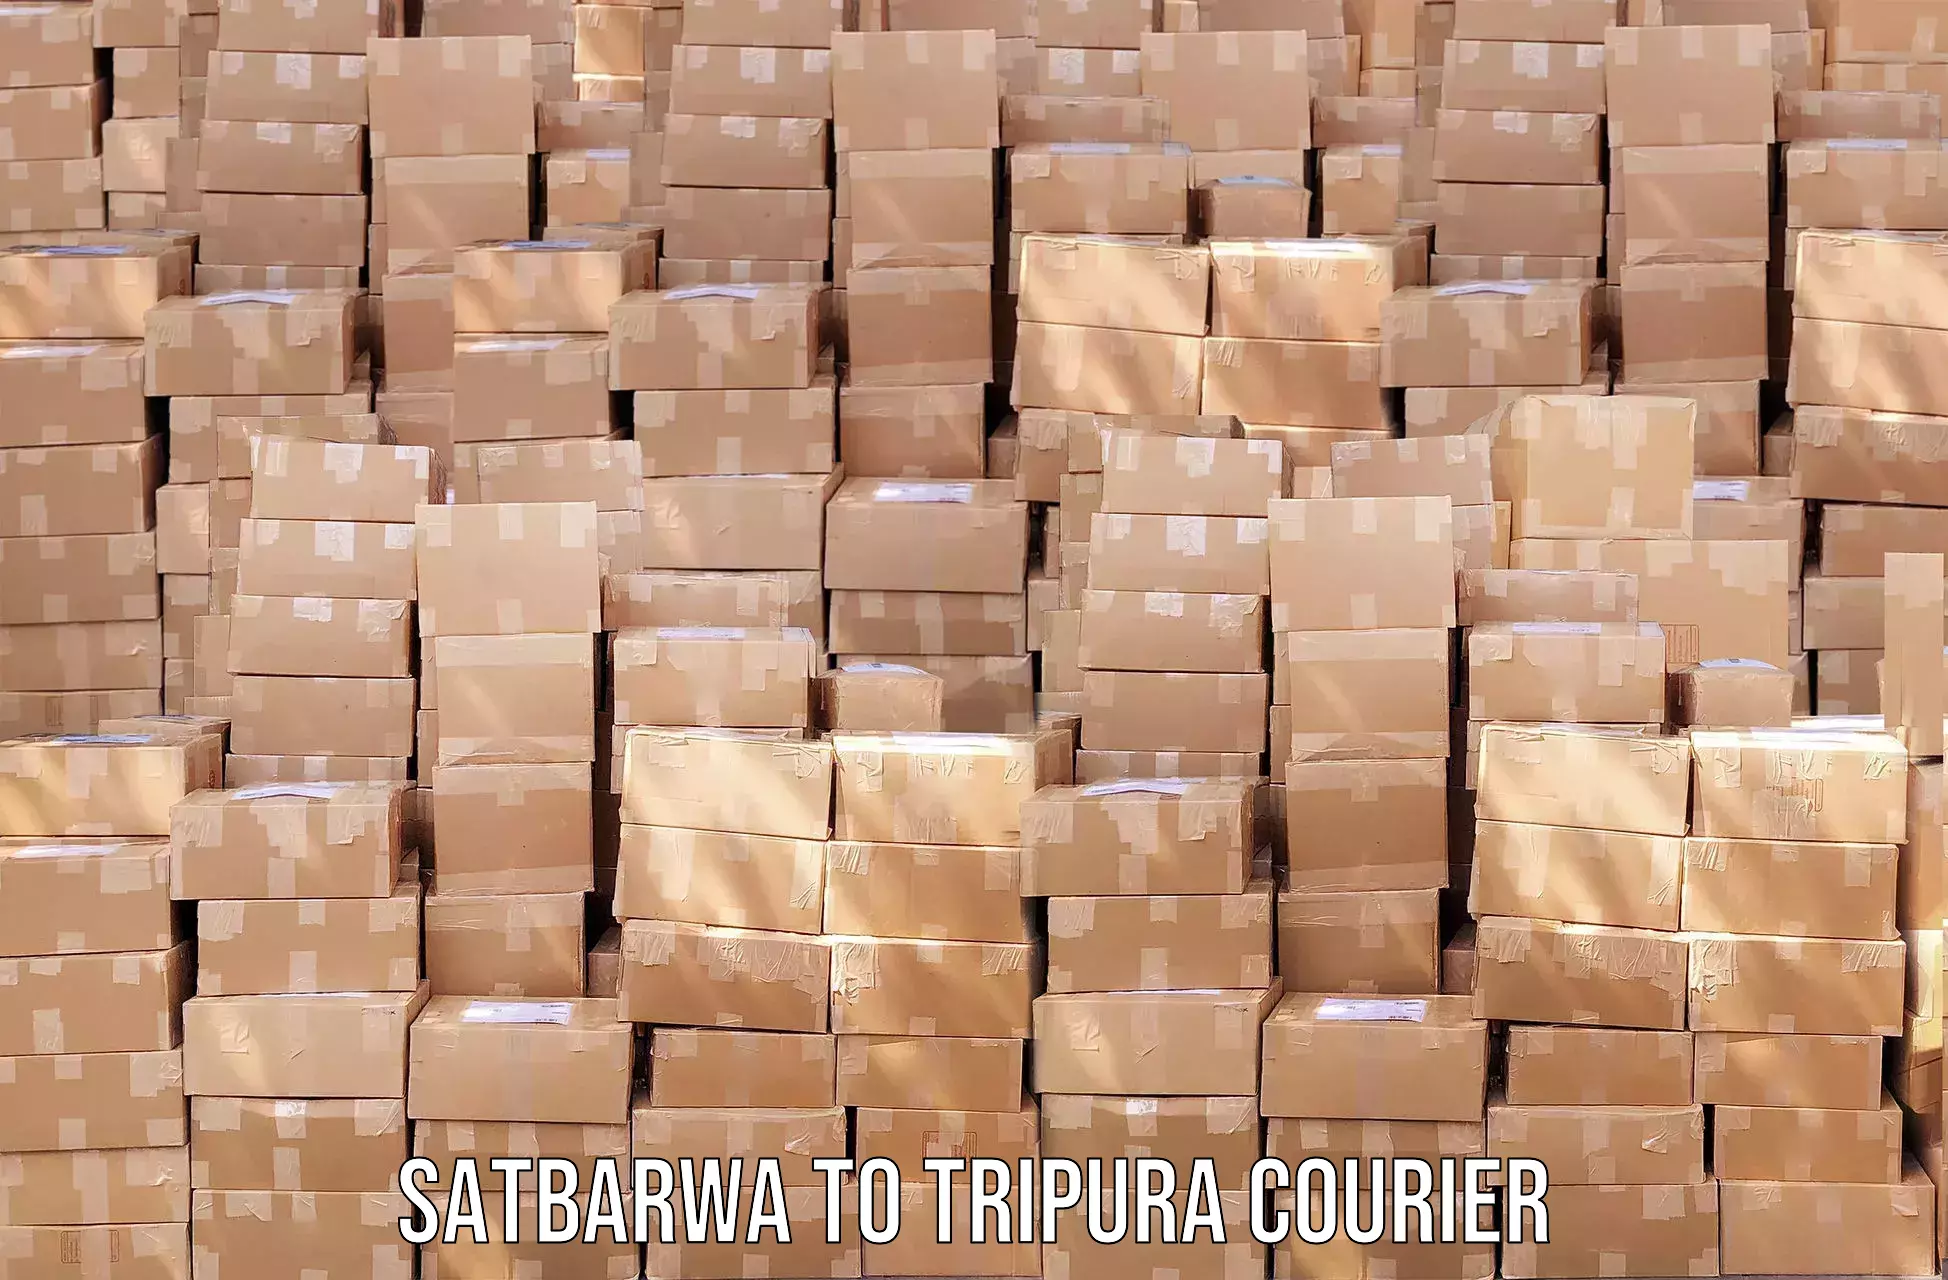 Efficient parcel tracking Satbarwa to IIIT Agartala